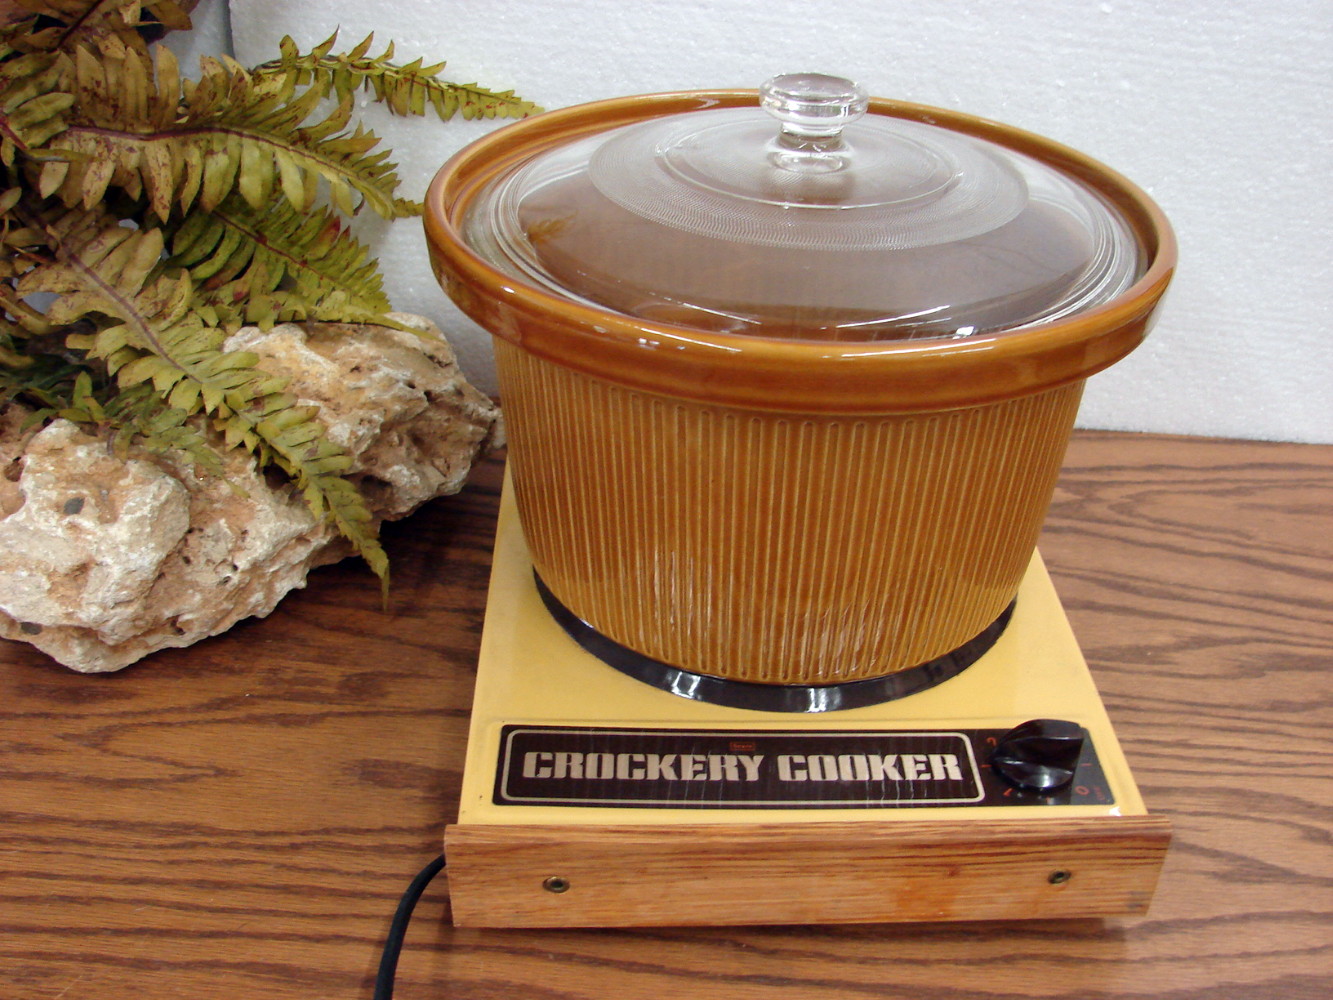 Vintage Crock Pot - Cookers & Steamers - Glenwood, Minnesota